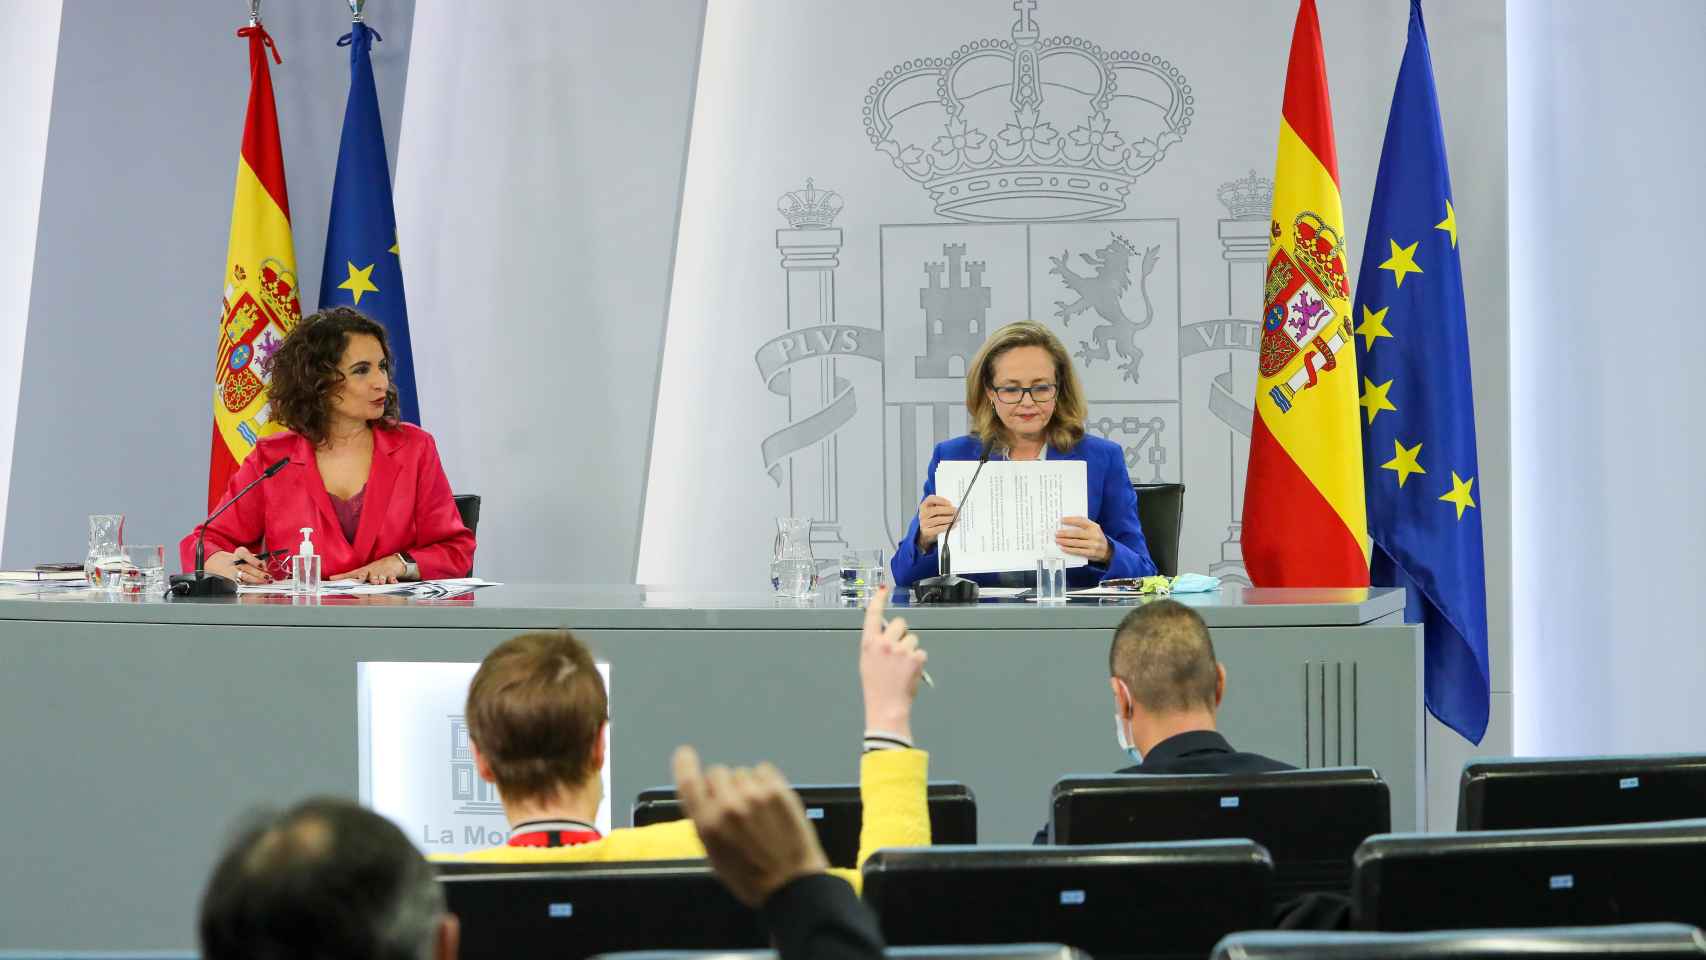 María Jesús Montero y Nadia Calviño, tras el Consejo de Ministros.